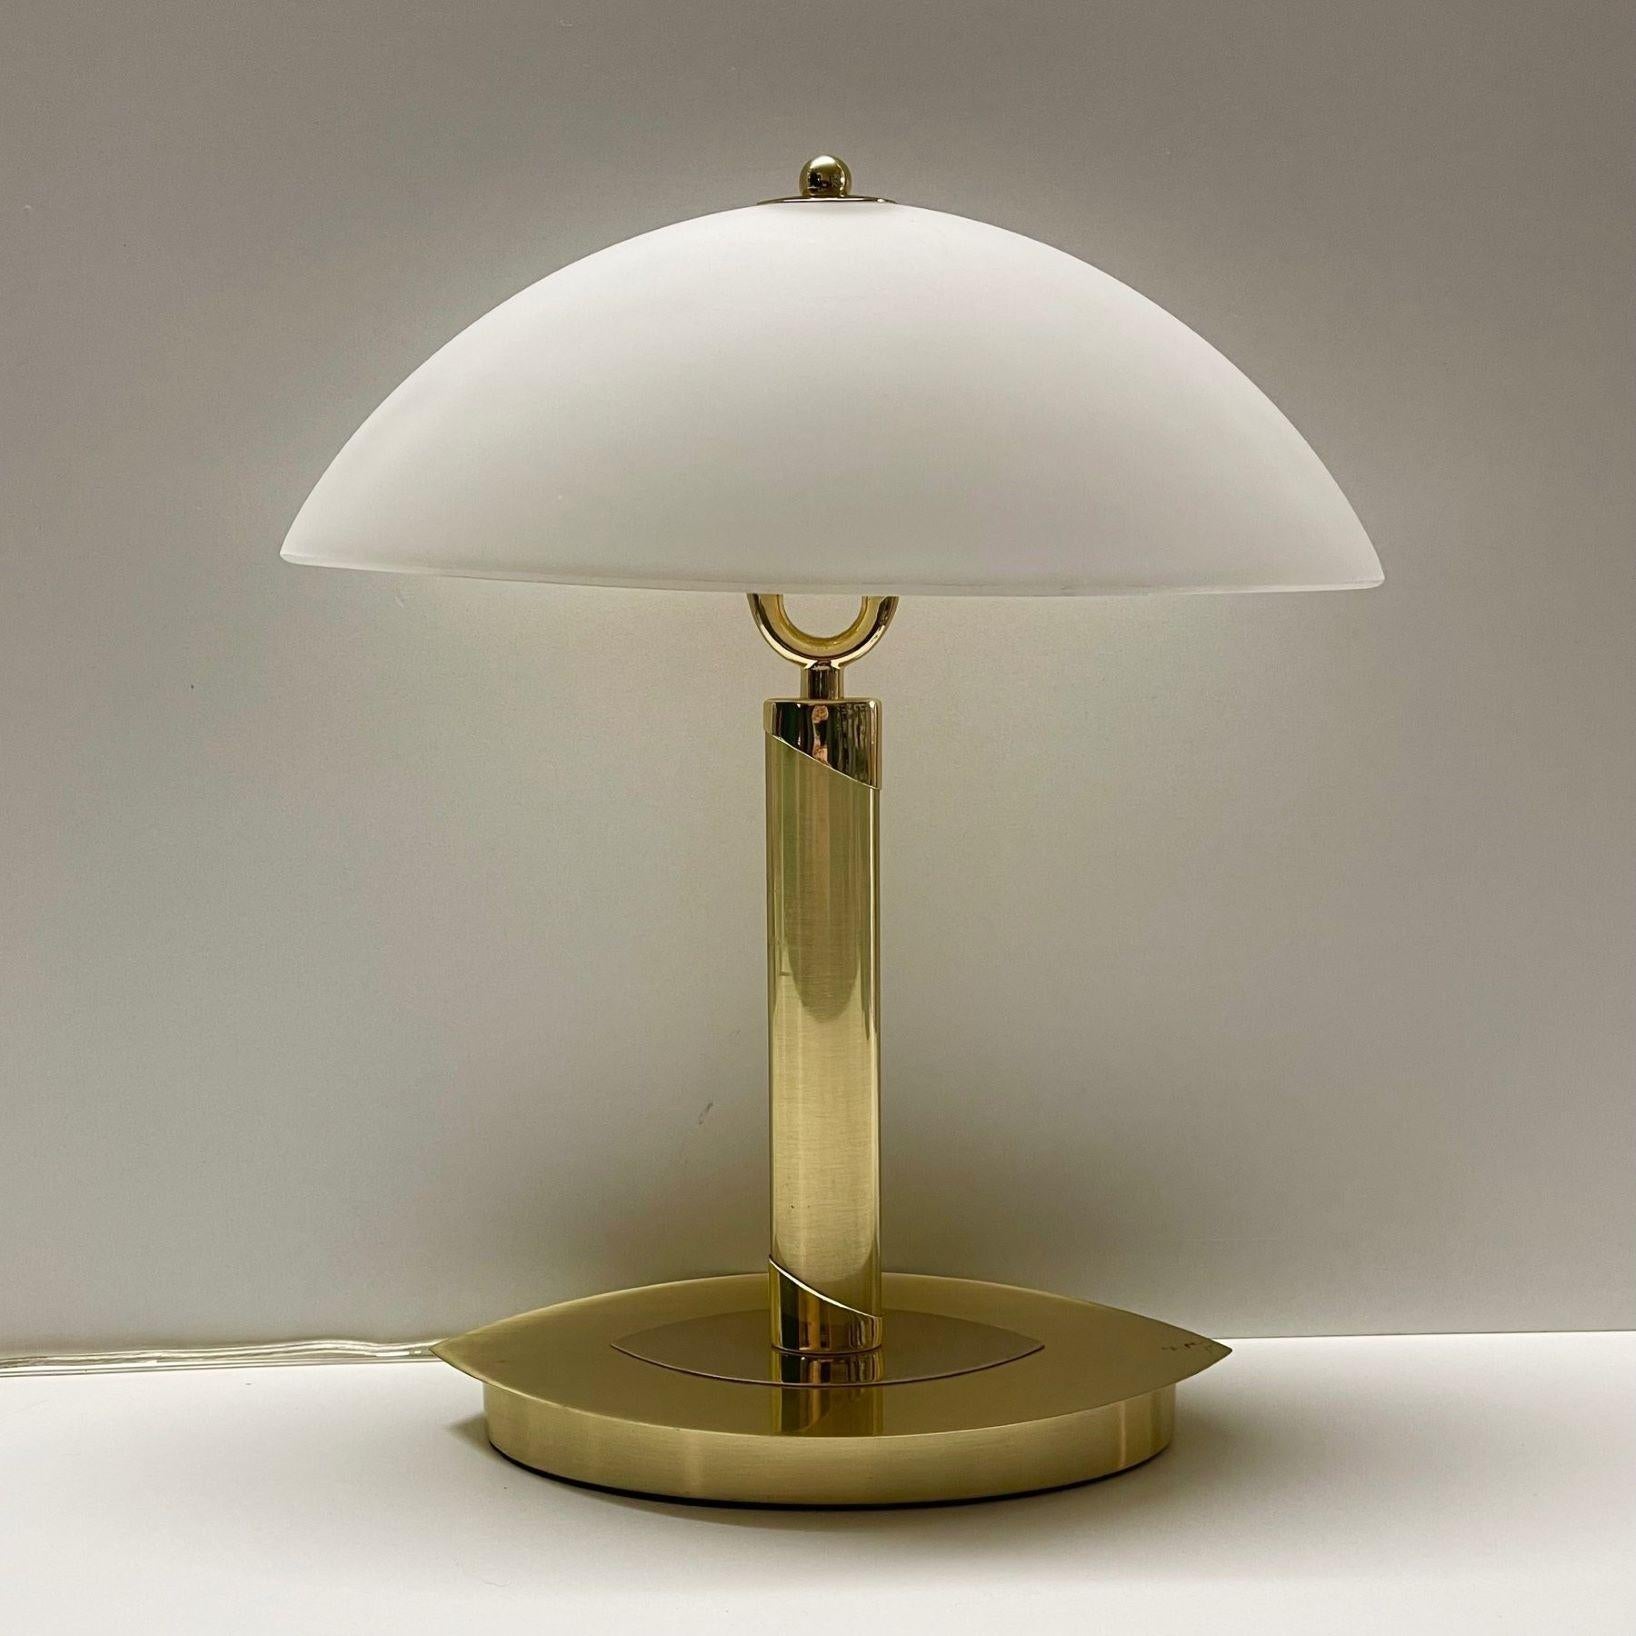 Lampe de bureau ou lampe de table à deux lumières Bauhaus, Allemagne, années 1960. Cette lampe de table de haute qualité est en laiton ciselé avec un abat-jour ovale en verre satiné. Cette lampe est entièrement fonctionnelle et en très bon état. Il